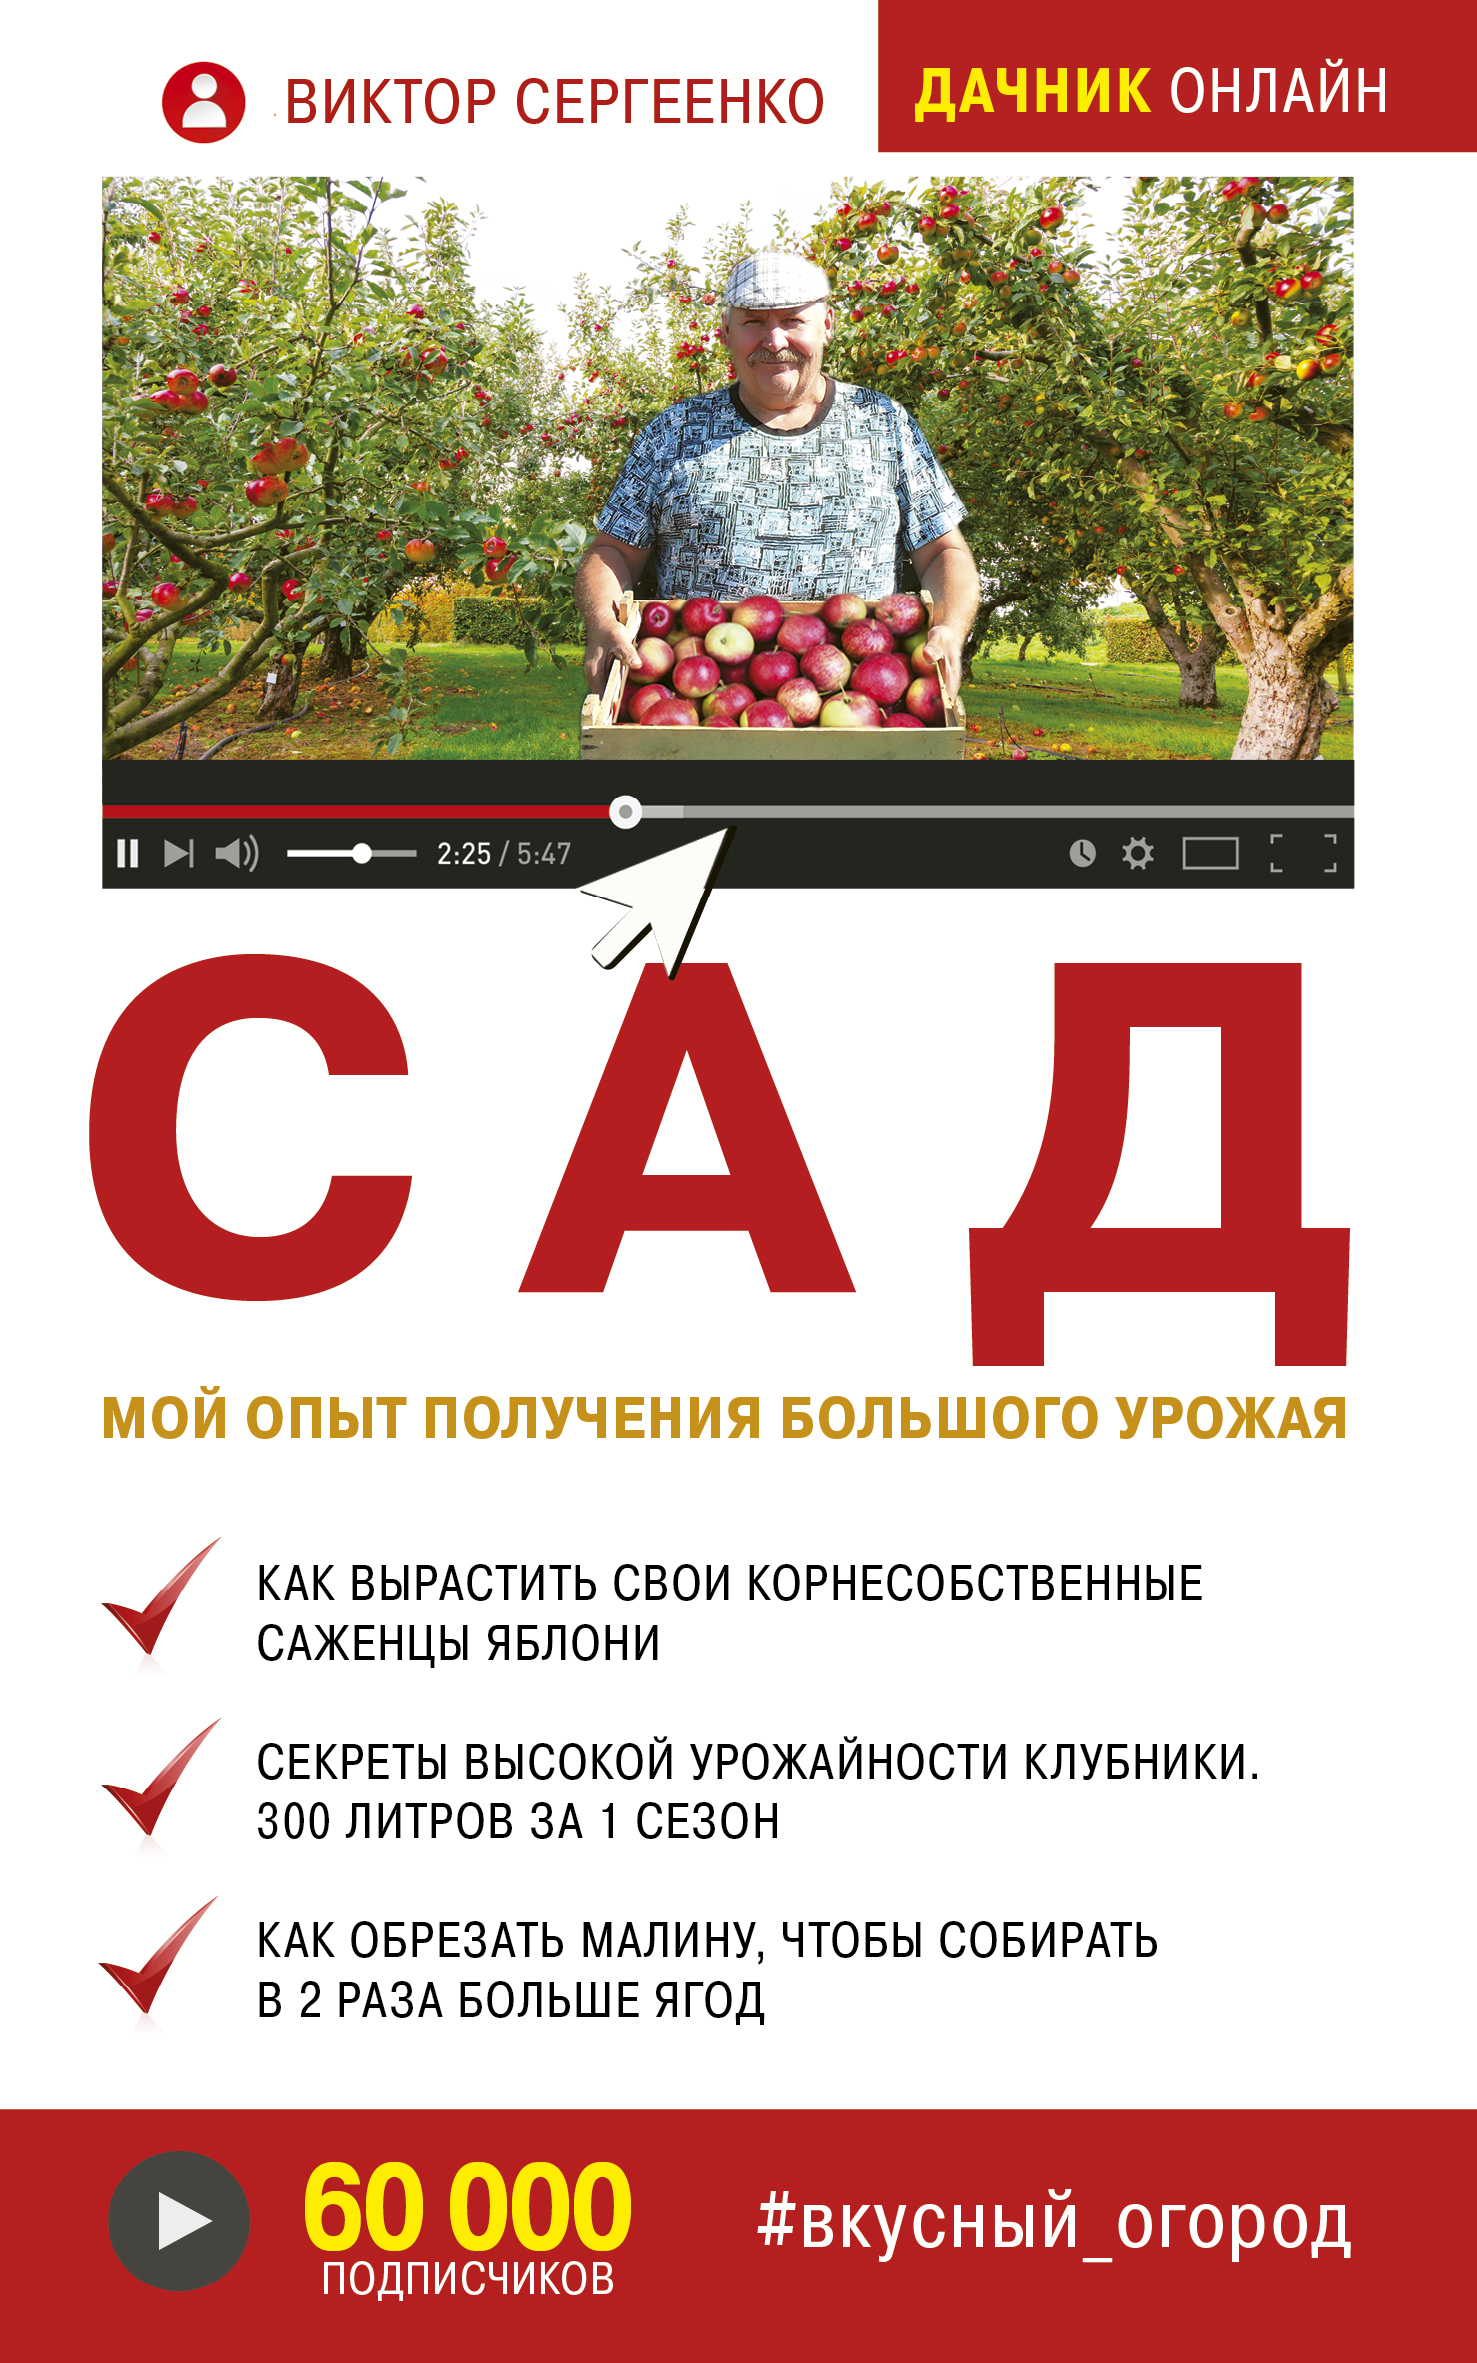 Книга Сад. Мой опыт получения большого урожая из серии , созданная Виктор Сергеенко, может относится к жанру Сад и Огород. Стоимость электронной книги Сад. Мой опыт получения большого урожая с идентификатором 41129731 составляет 79.99 руб.